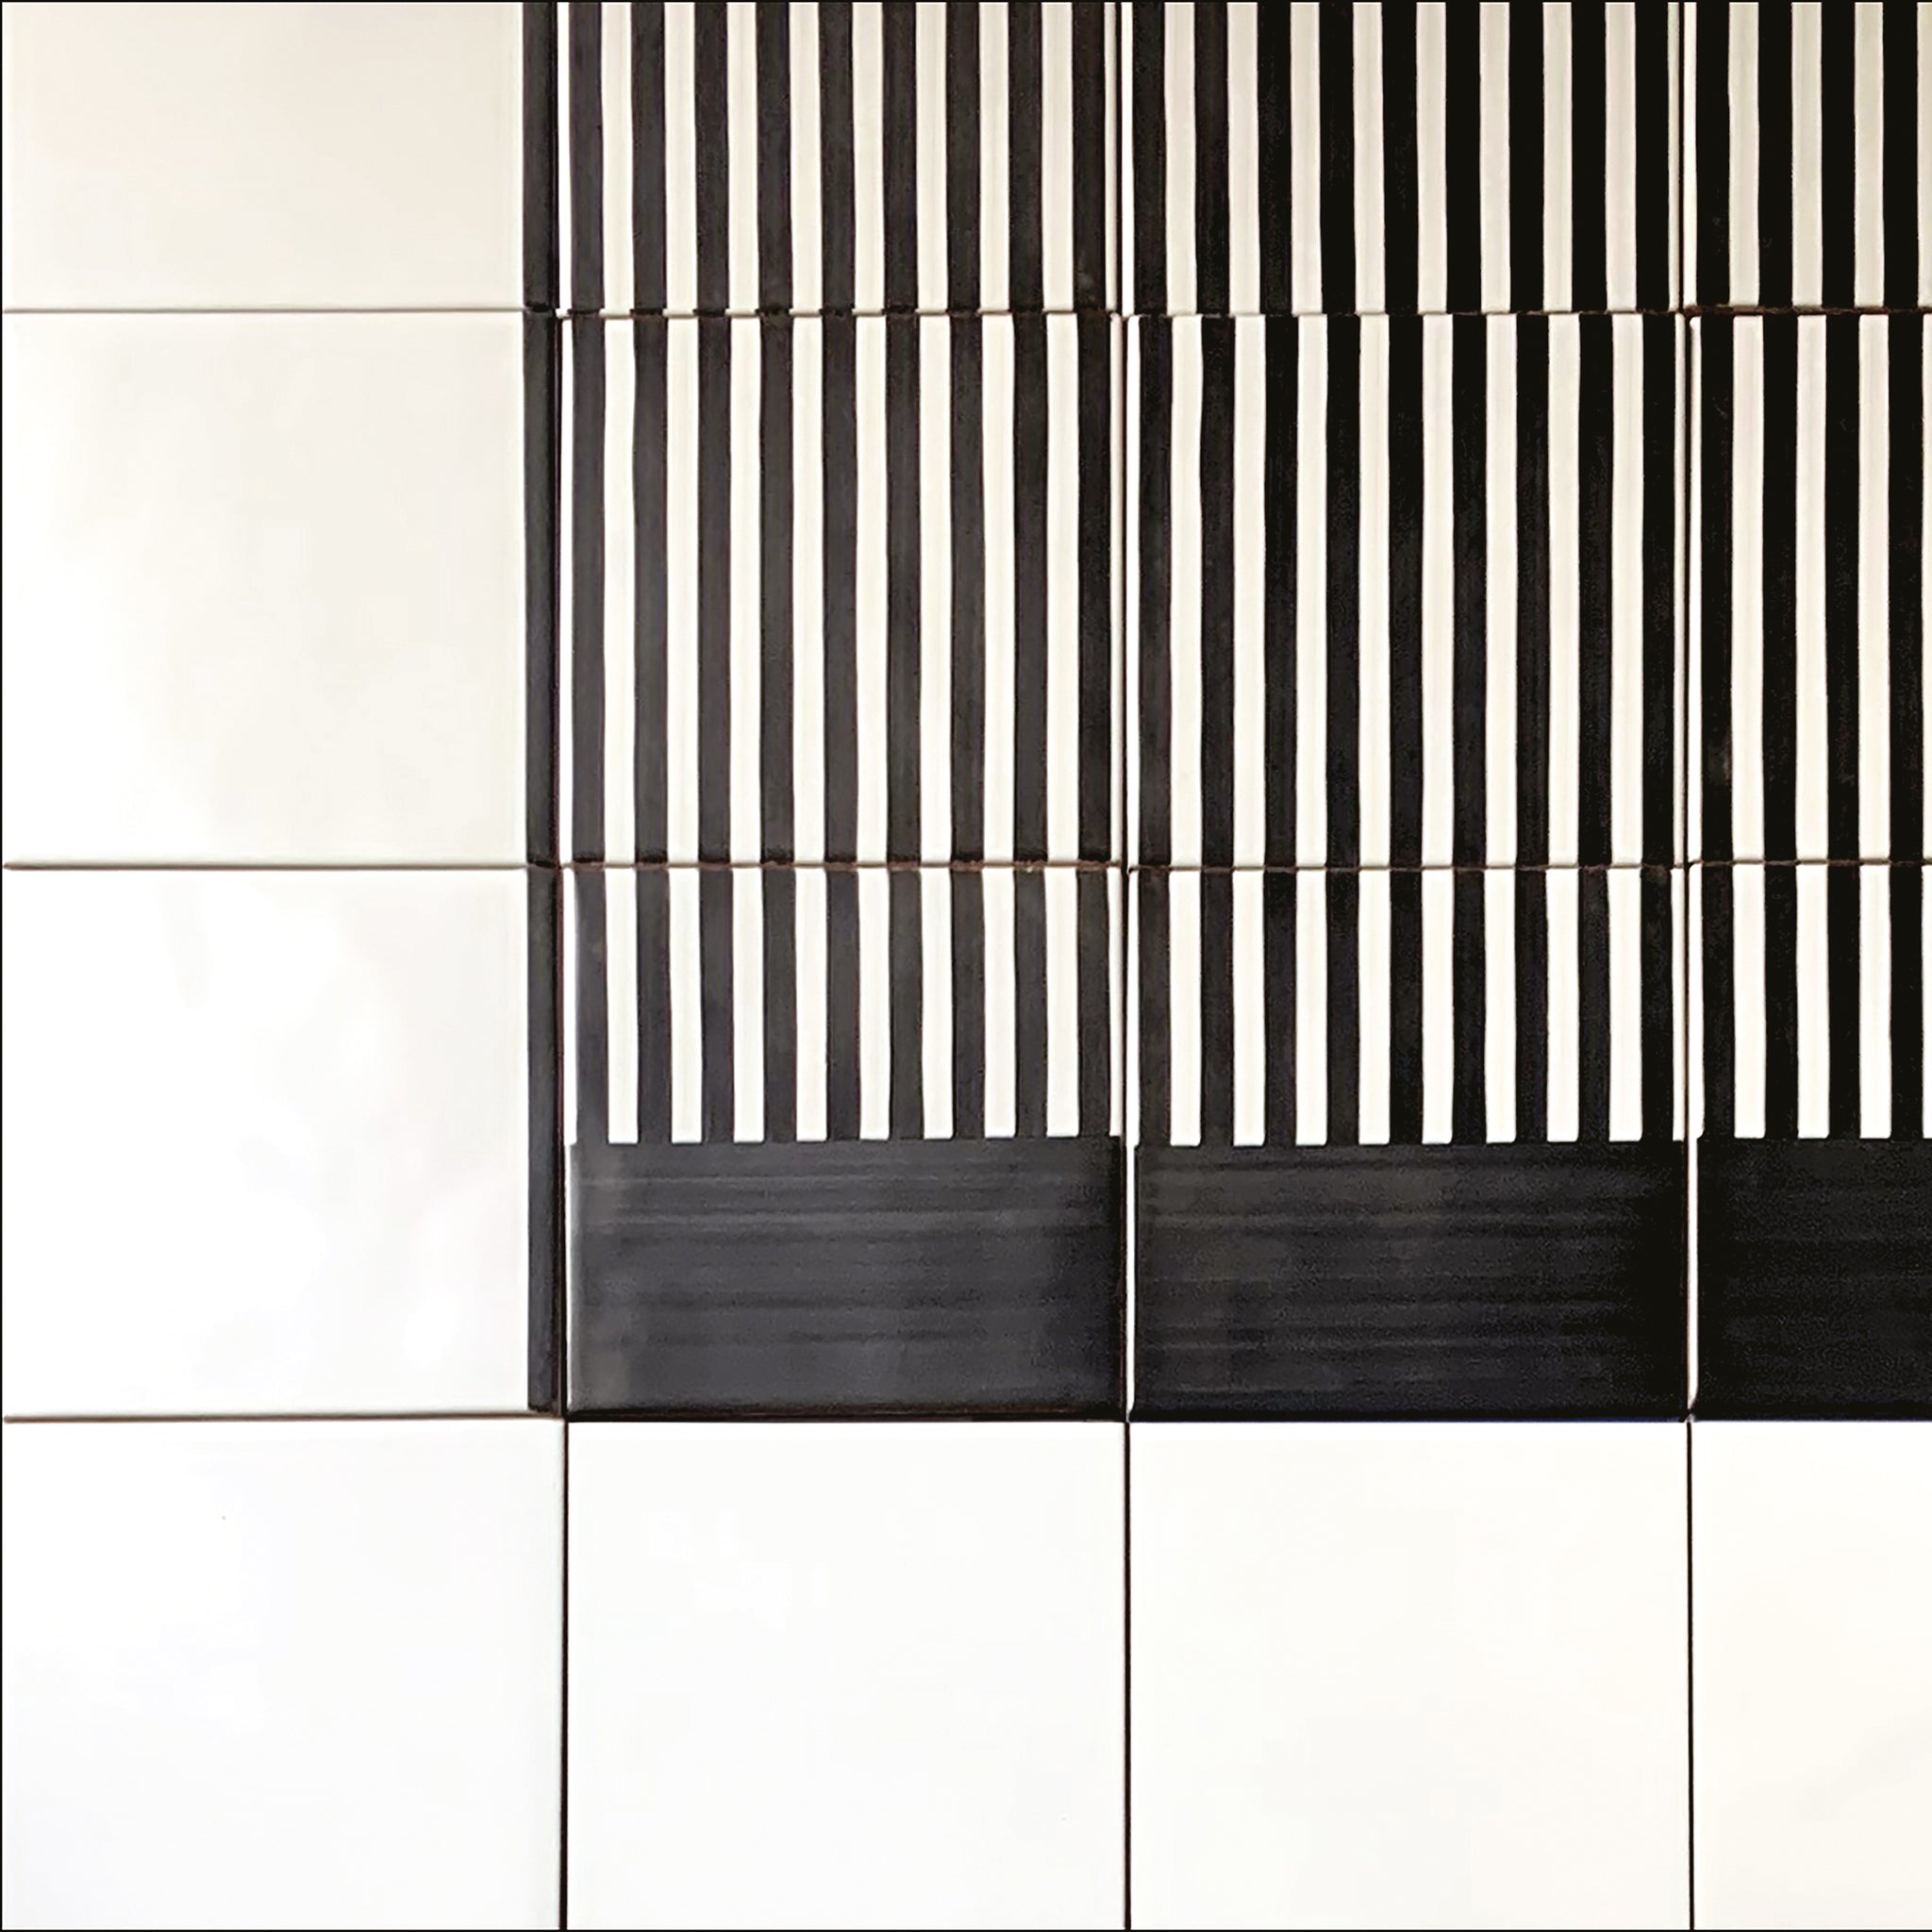 Carpet Green and Black & White Ceramic Composition by Giuliano Andrea dell’Uva 160 x 80 - Alternative view 4